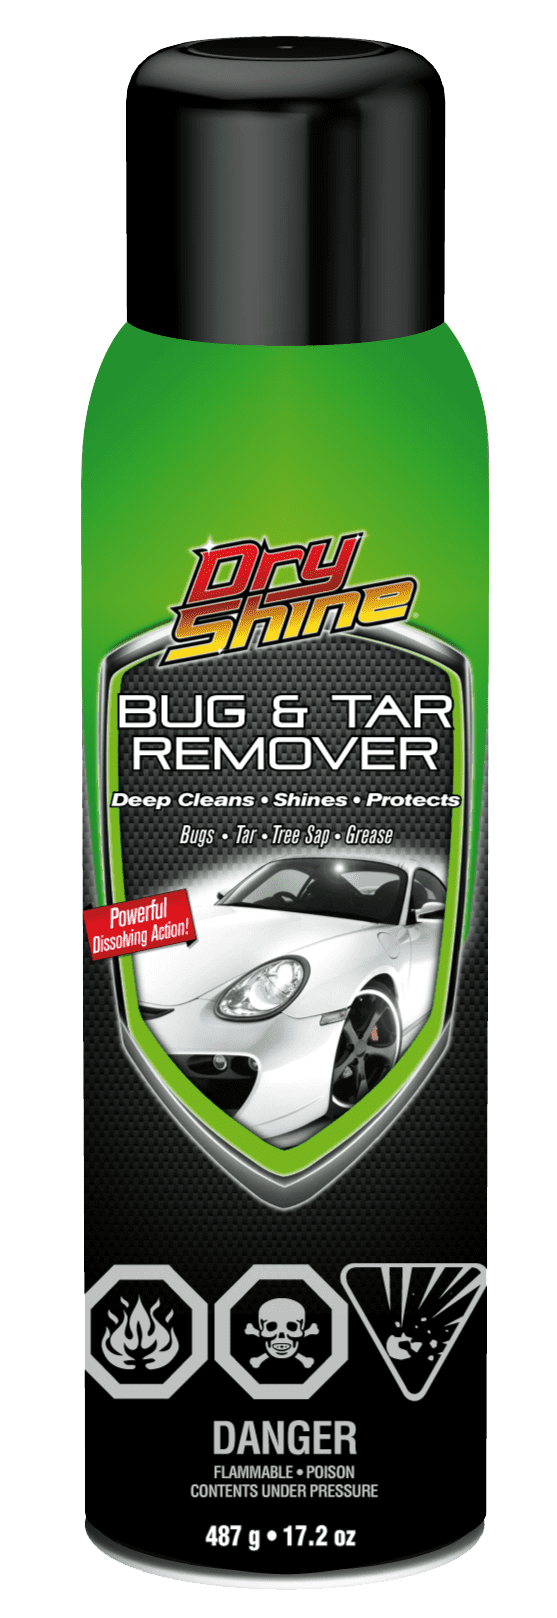 Bug and Tar Remover - 17.2 oz.